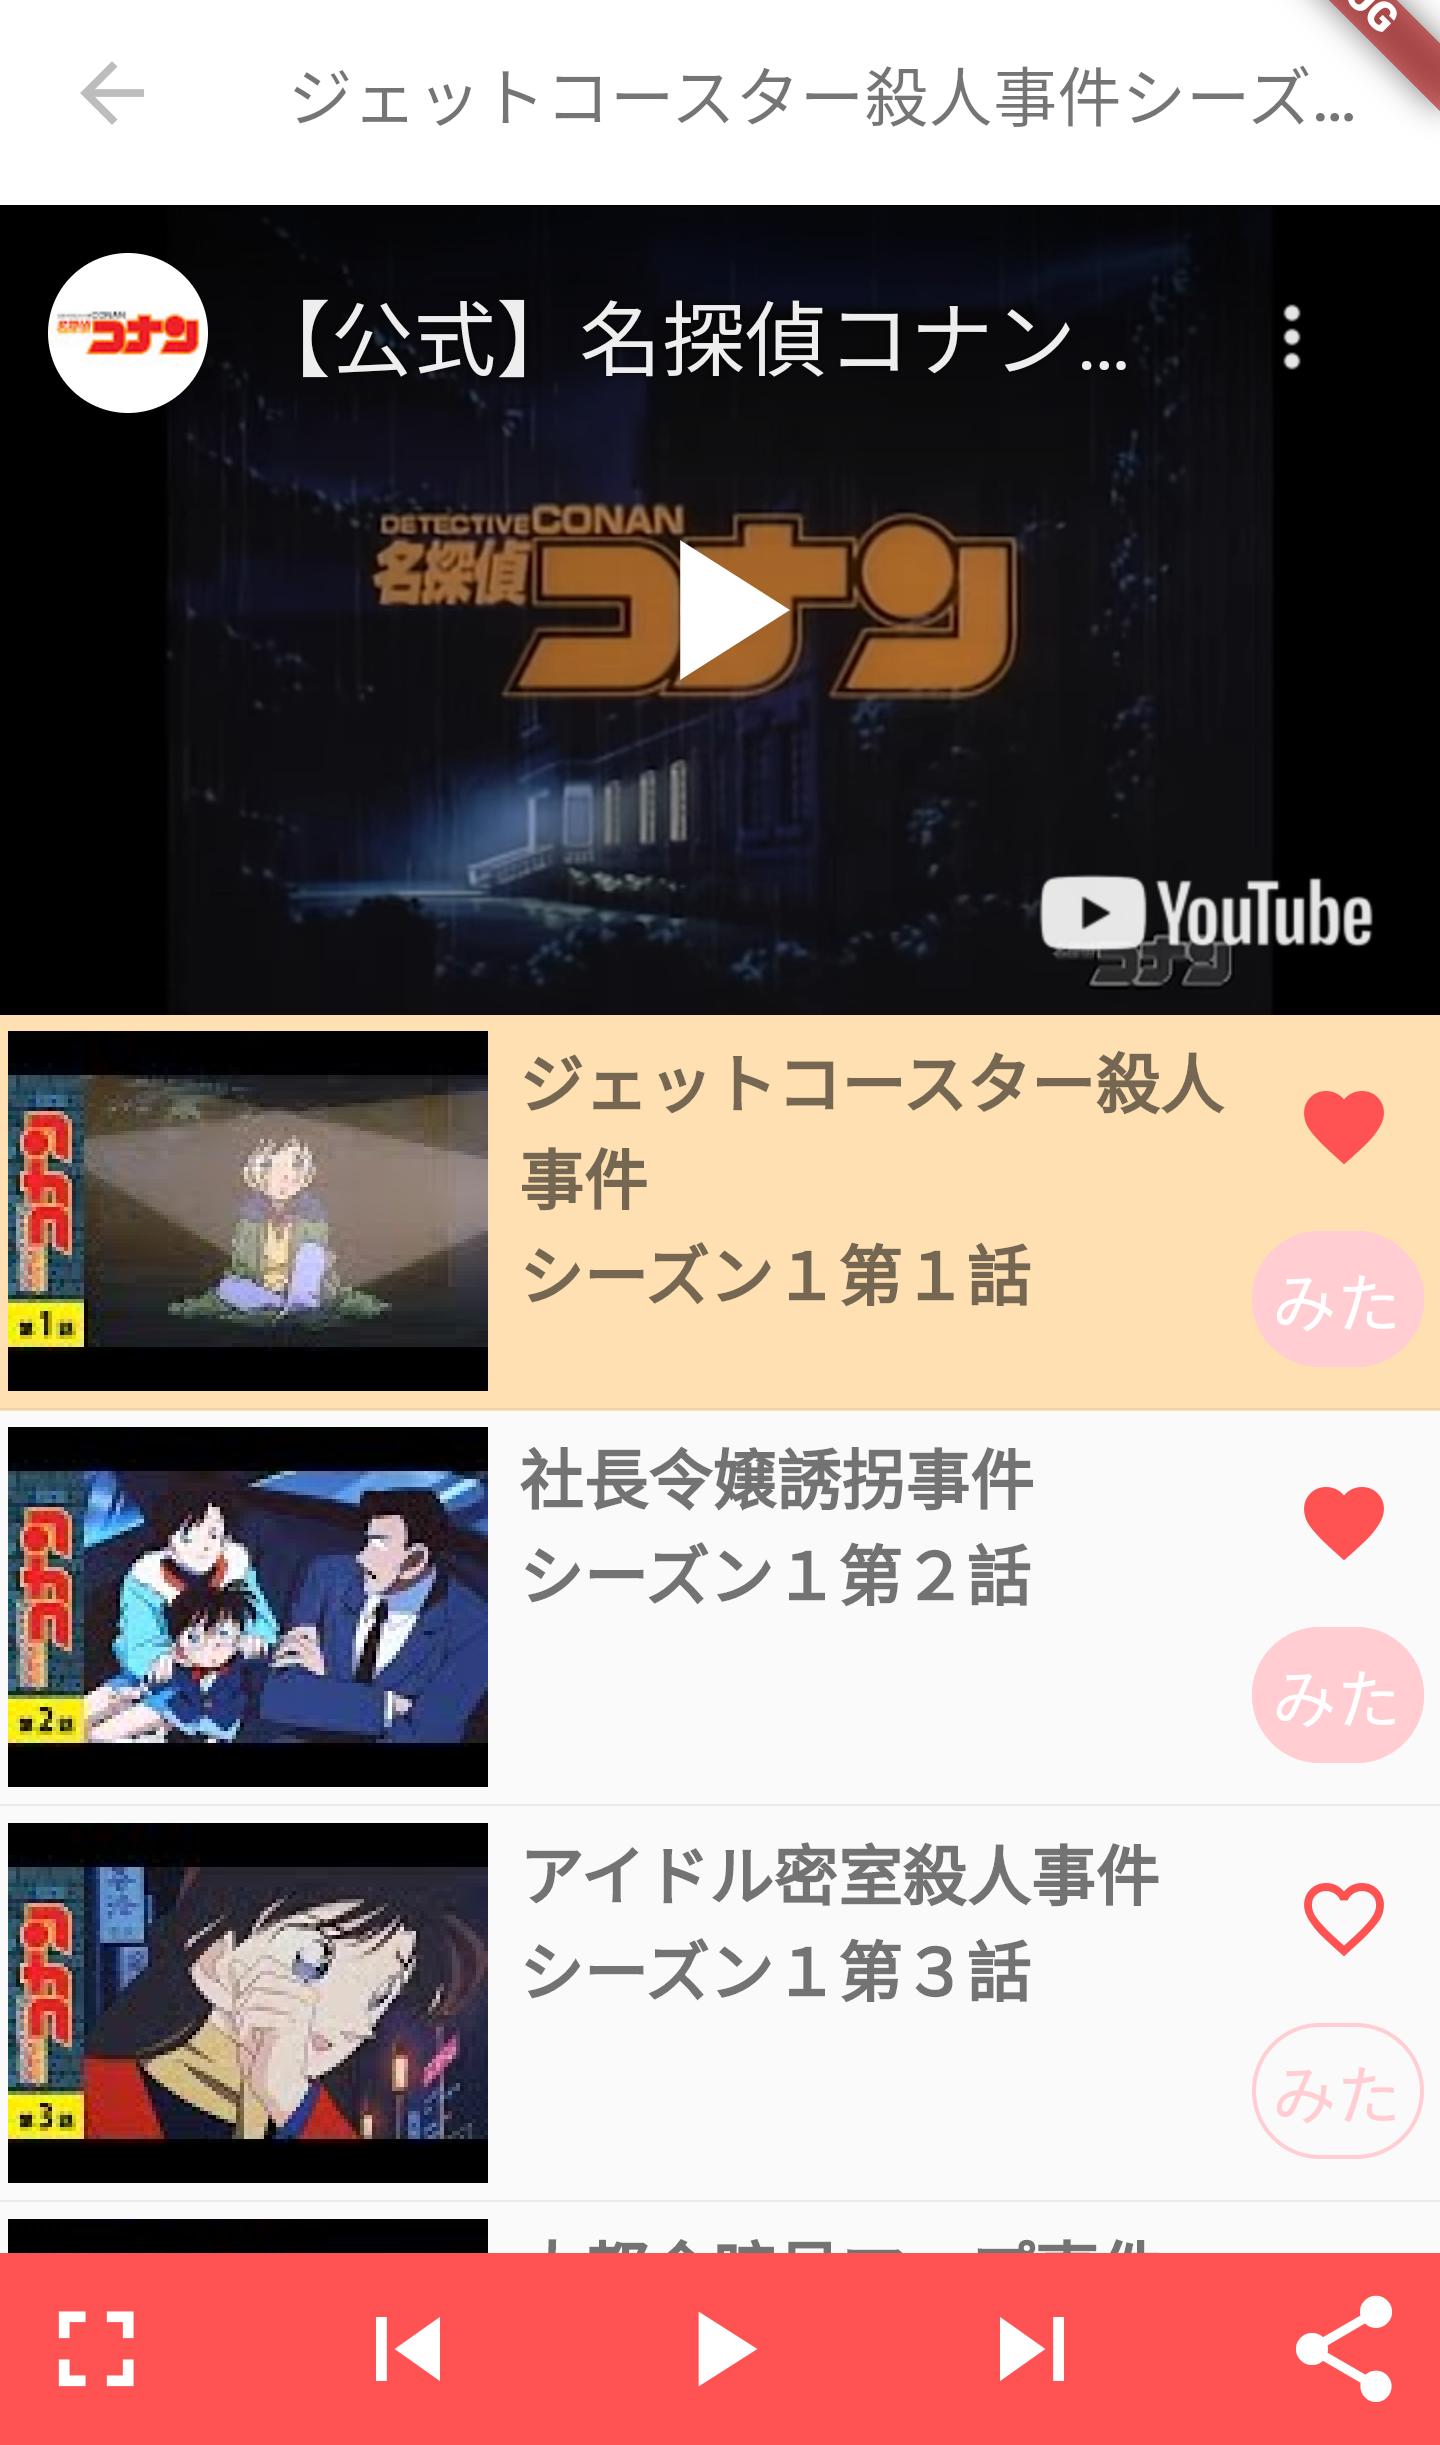 名探偵コナン無料動画 For Android Apk Download